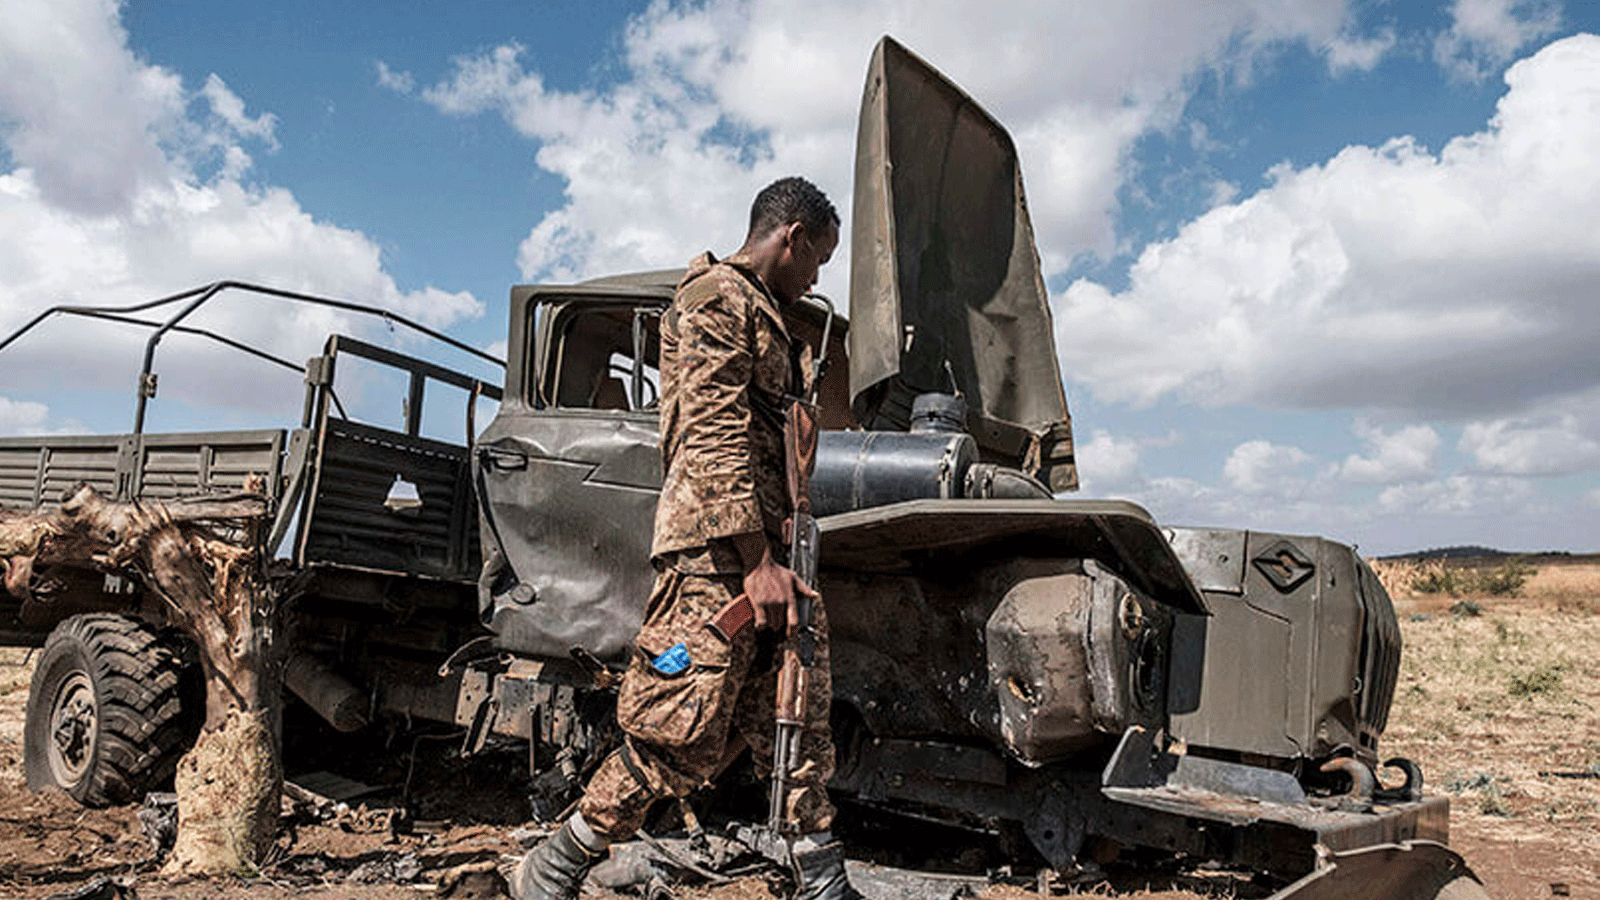 أحد عناصر قوات الدفاع الإثيوبية يتفقد شاحنة عسكرية متضررة متروكة على طريق قرب قرية أياسو جبريل شرقي مدينة ألاماتا الإثيوبية